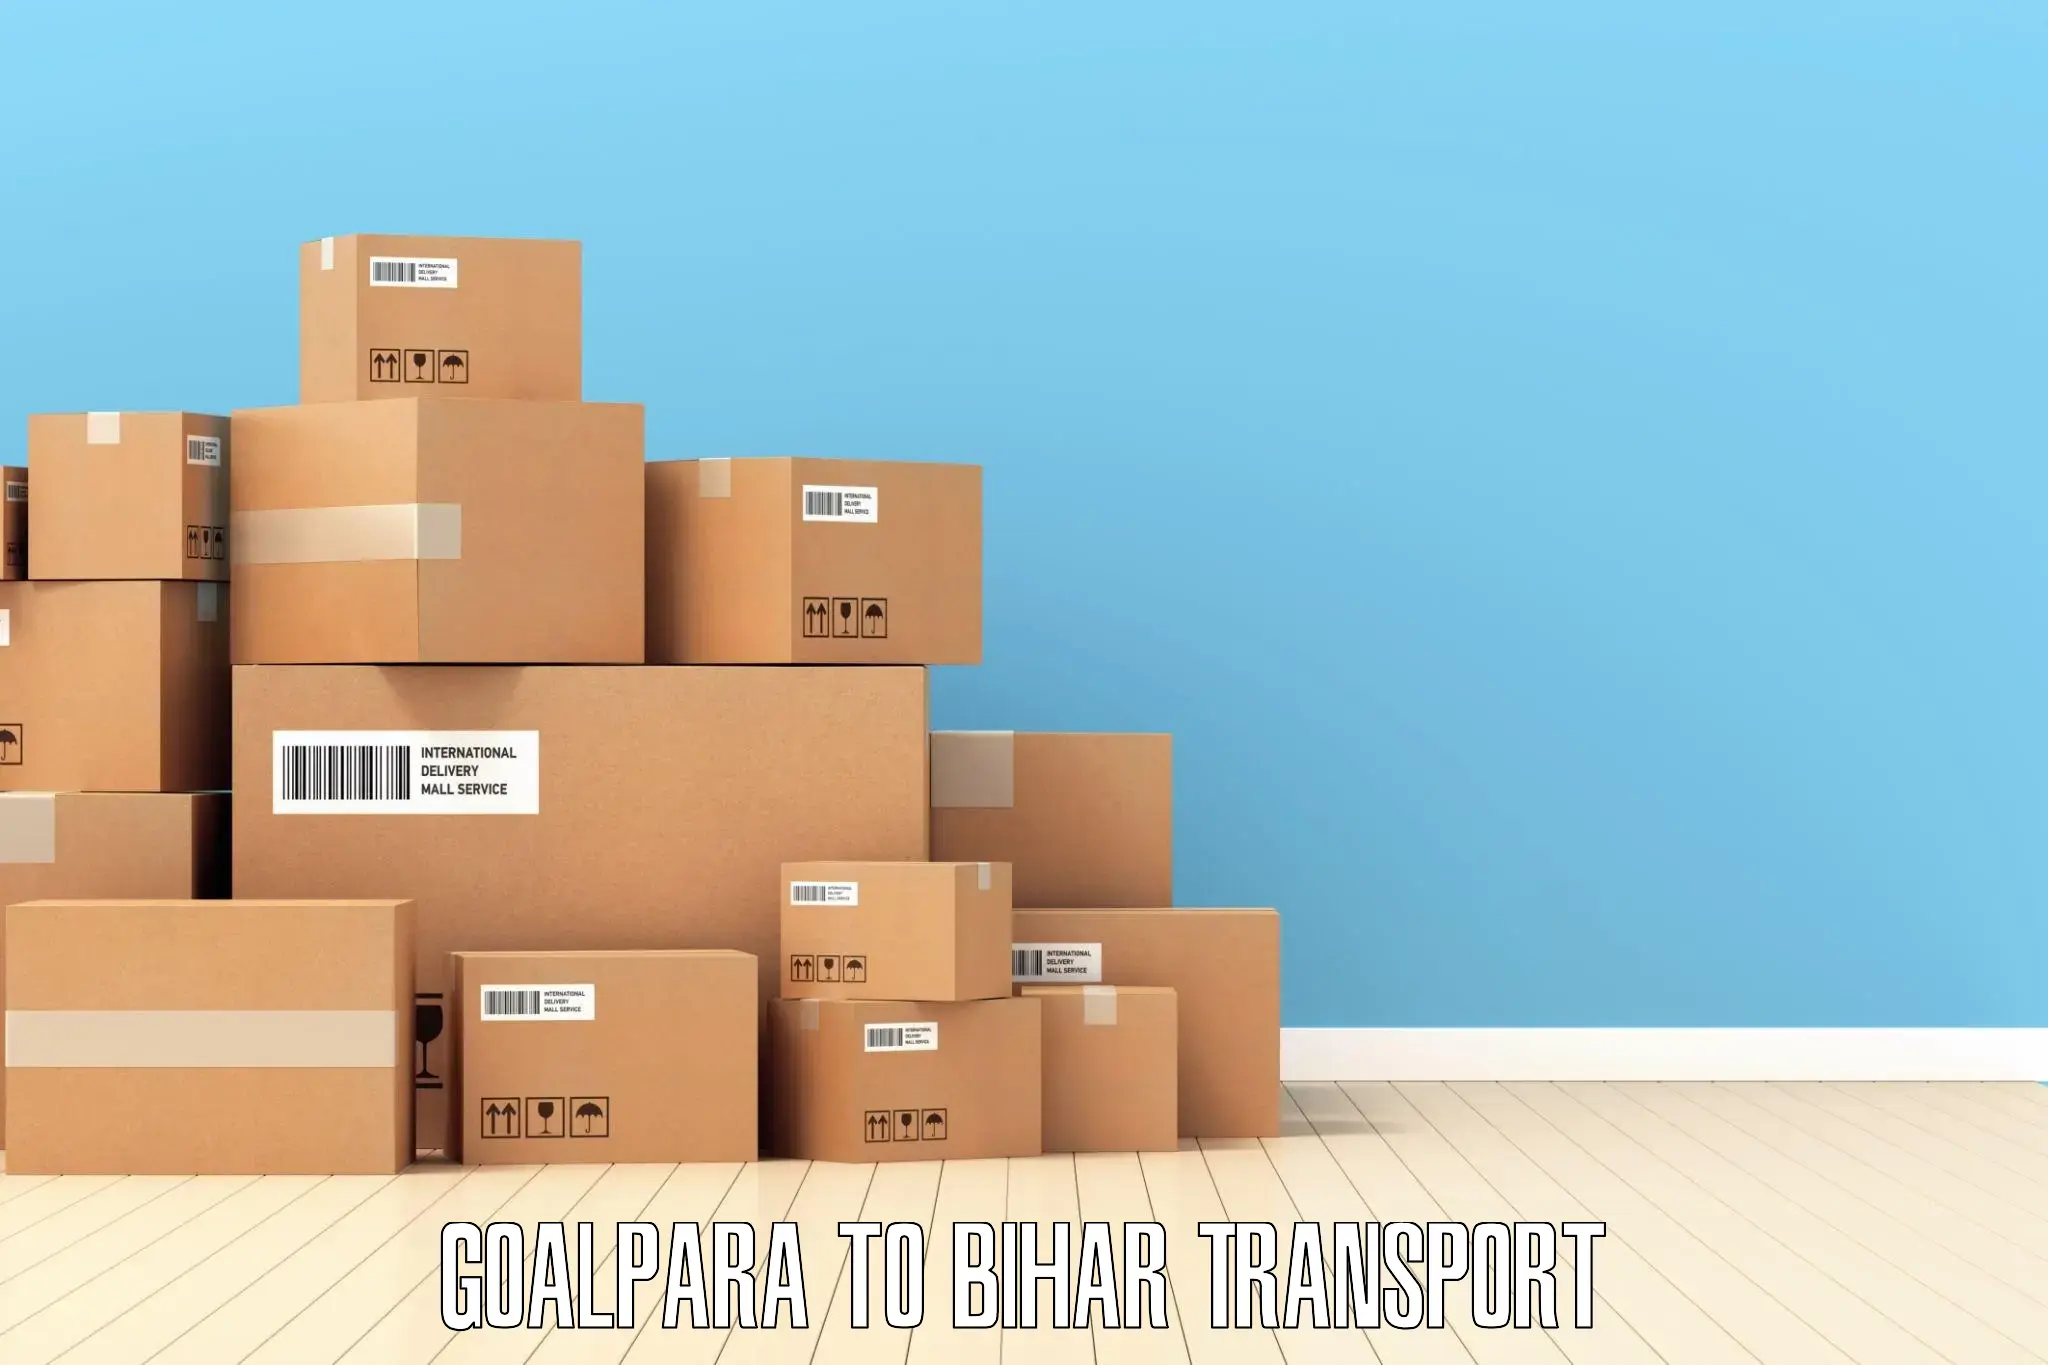 Air cargo transport services Goalpara to Buxar